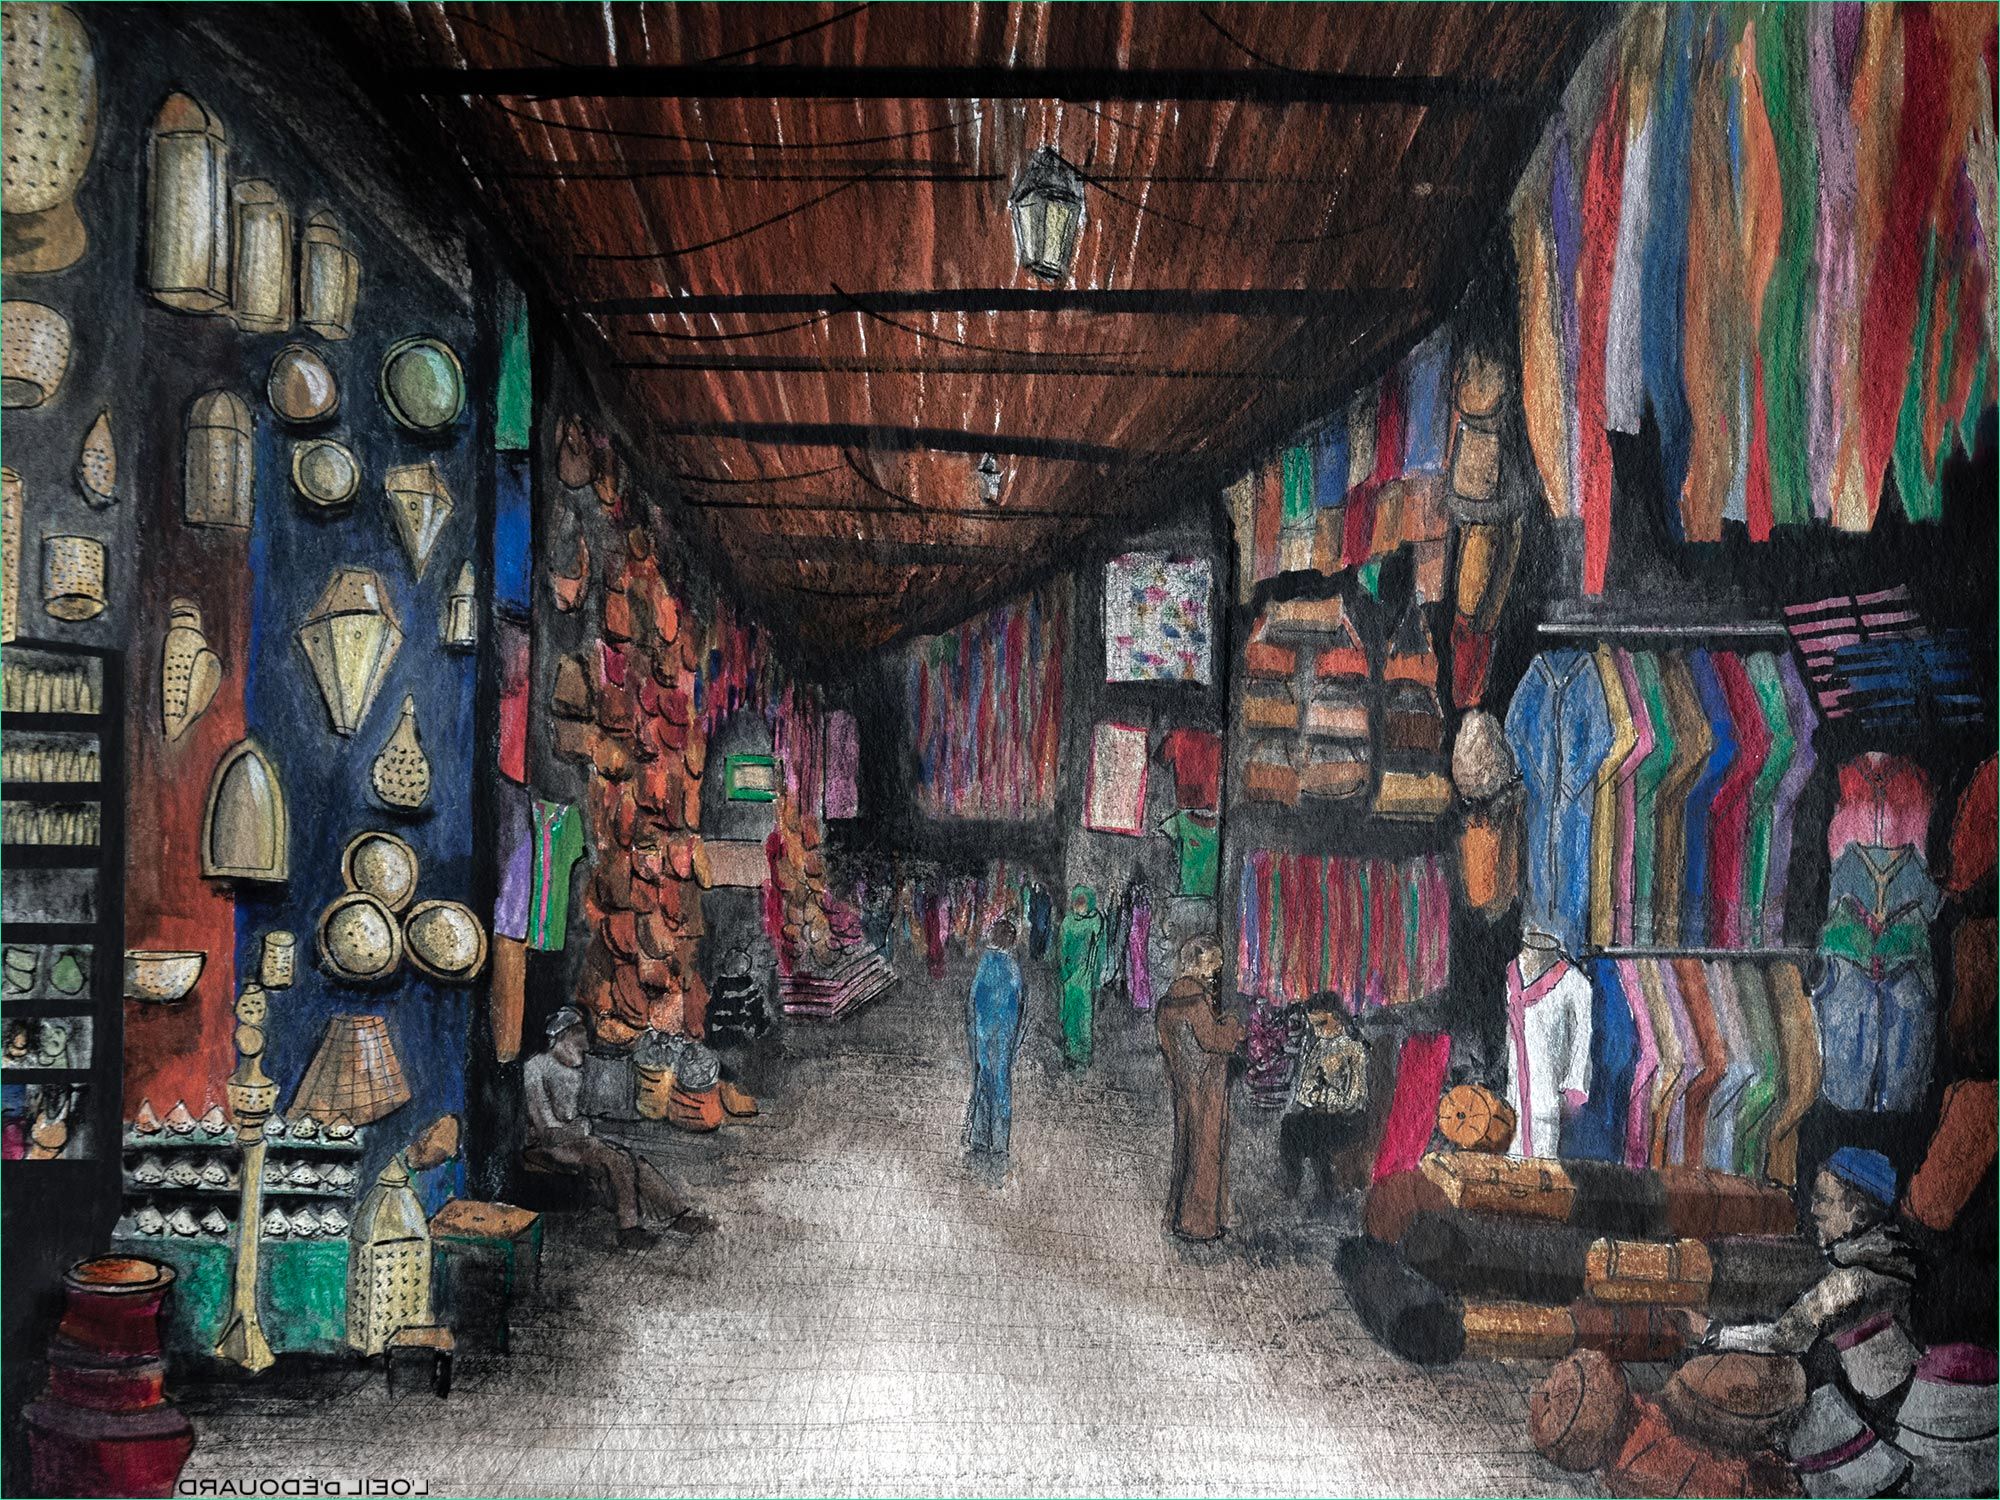 Maroc Dessin Beau Galerie Balade Dans La MÉdina Et Les souks De Marrakech Blog